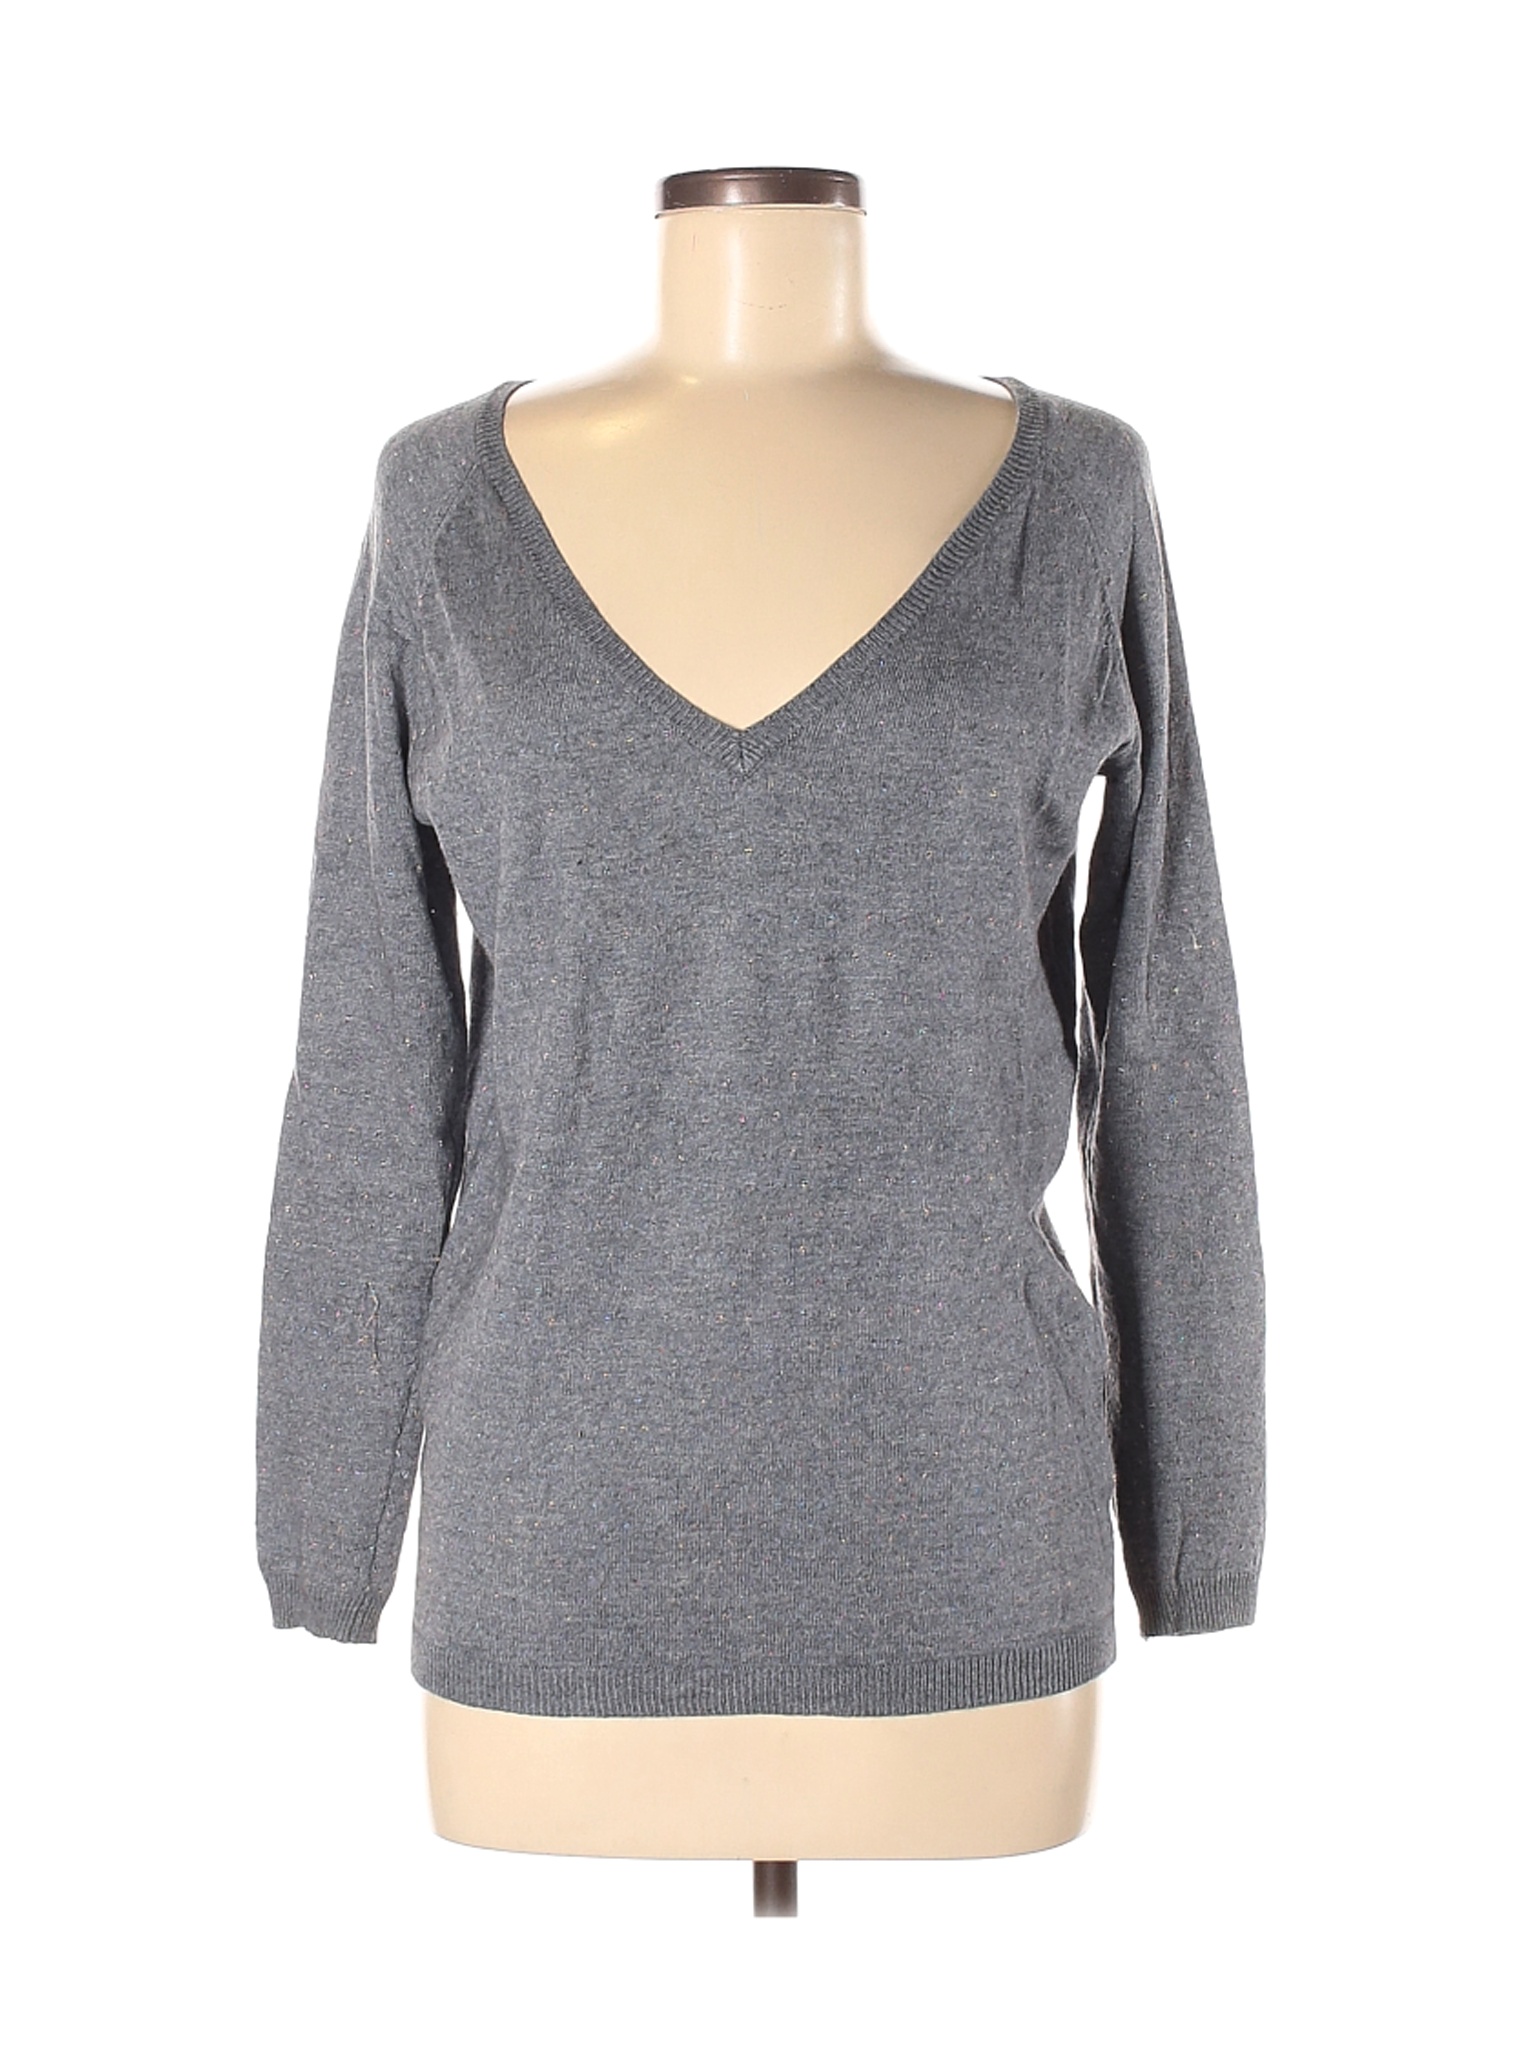 Yessica Women Gray Pullover Sweater M | eBay